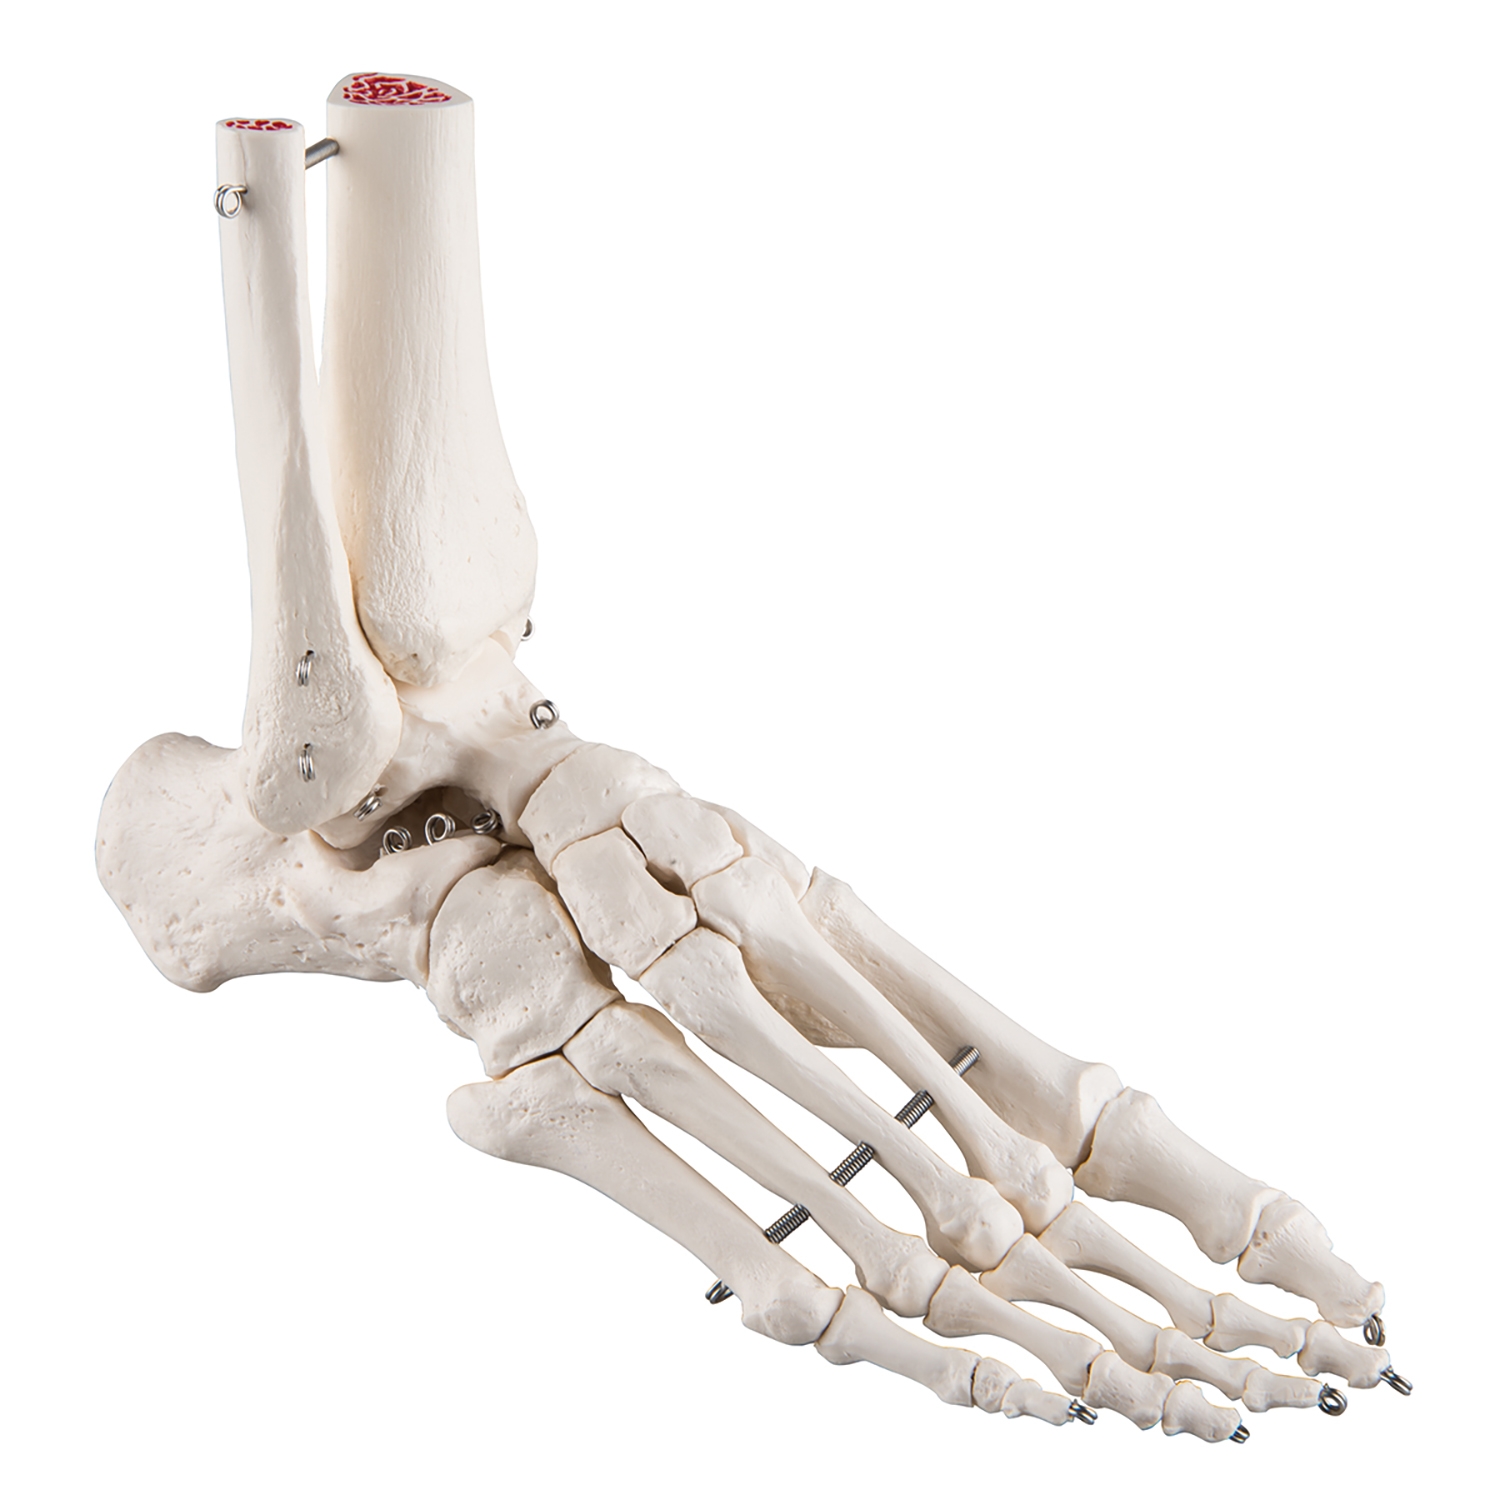 Skelet voet en onderbeen - Links